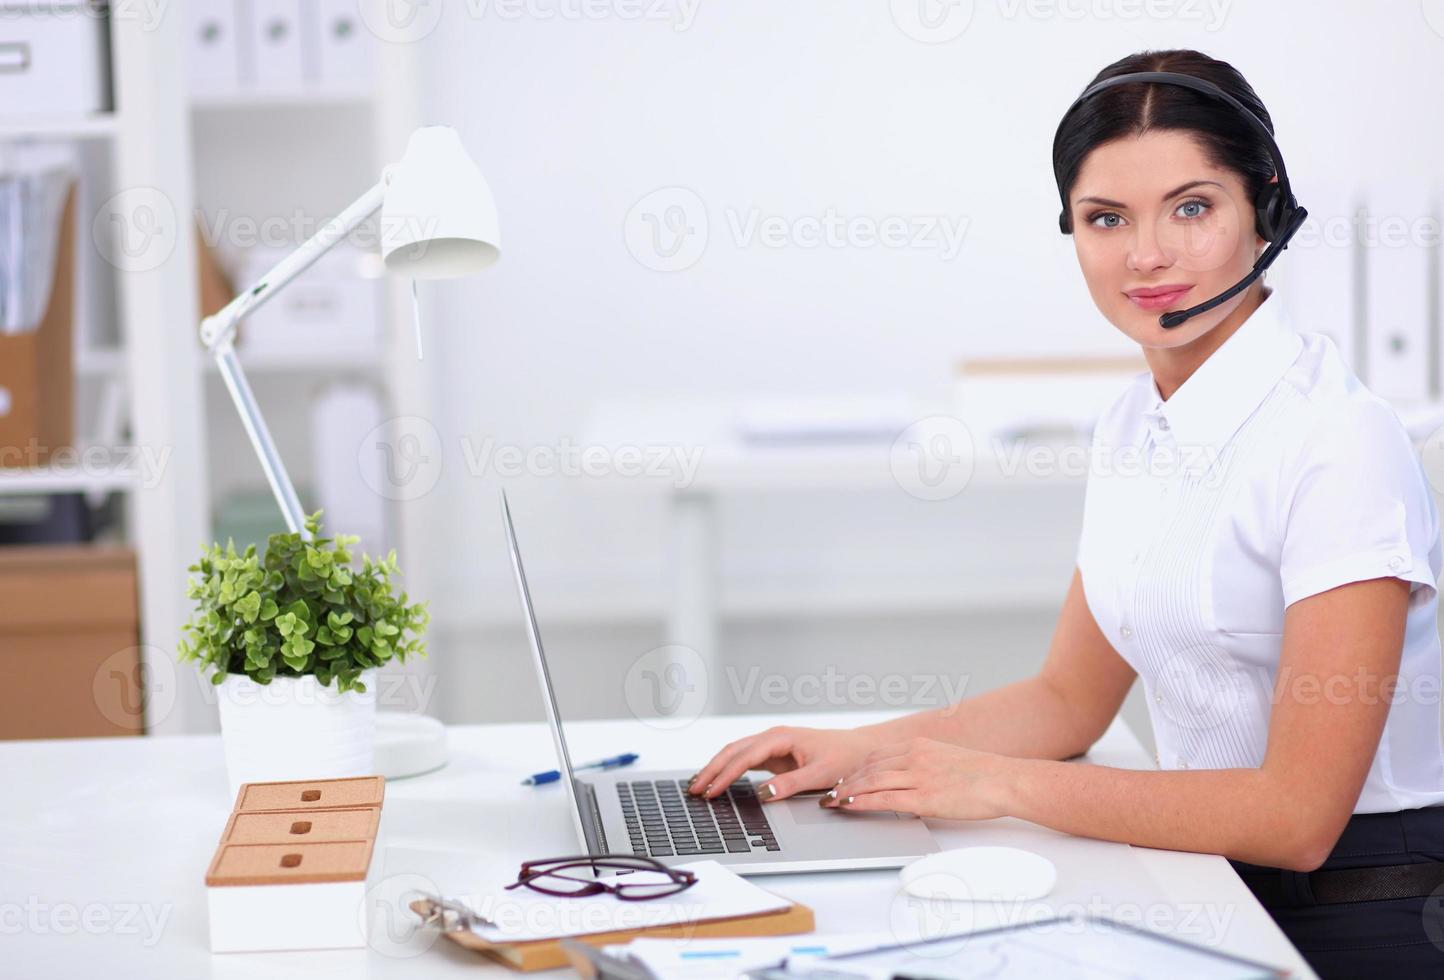 retrato de close-up de um agente de serviço ao cliente sentado no foto